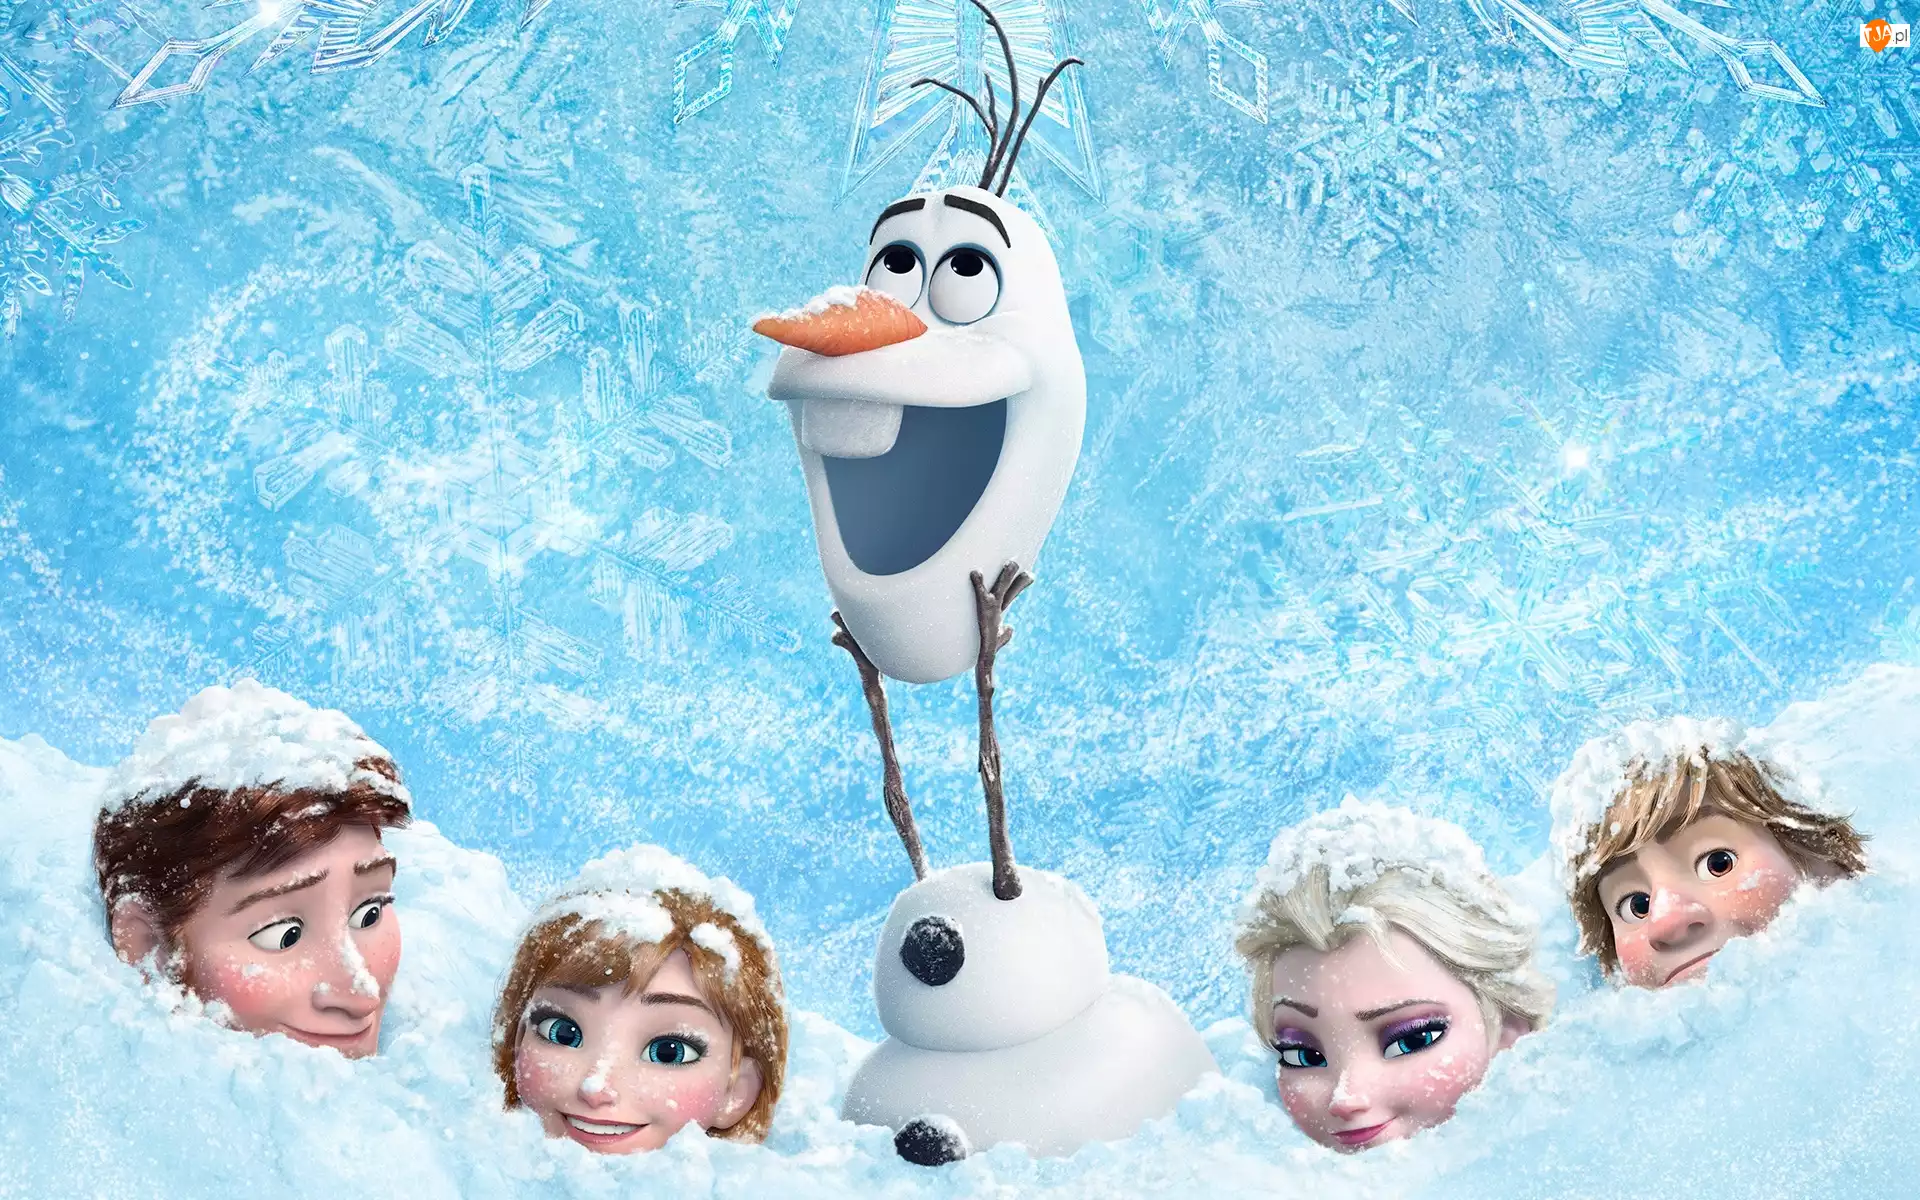 Olaf, Kraina lodu, Frozen, Bajka